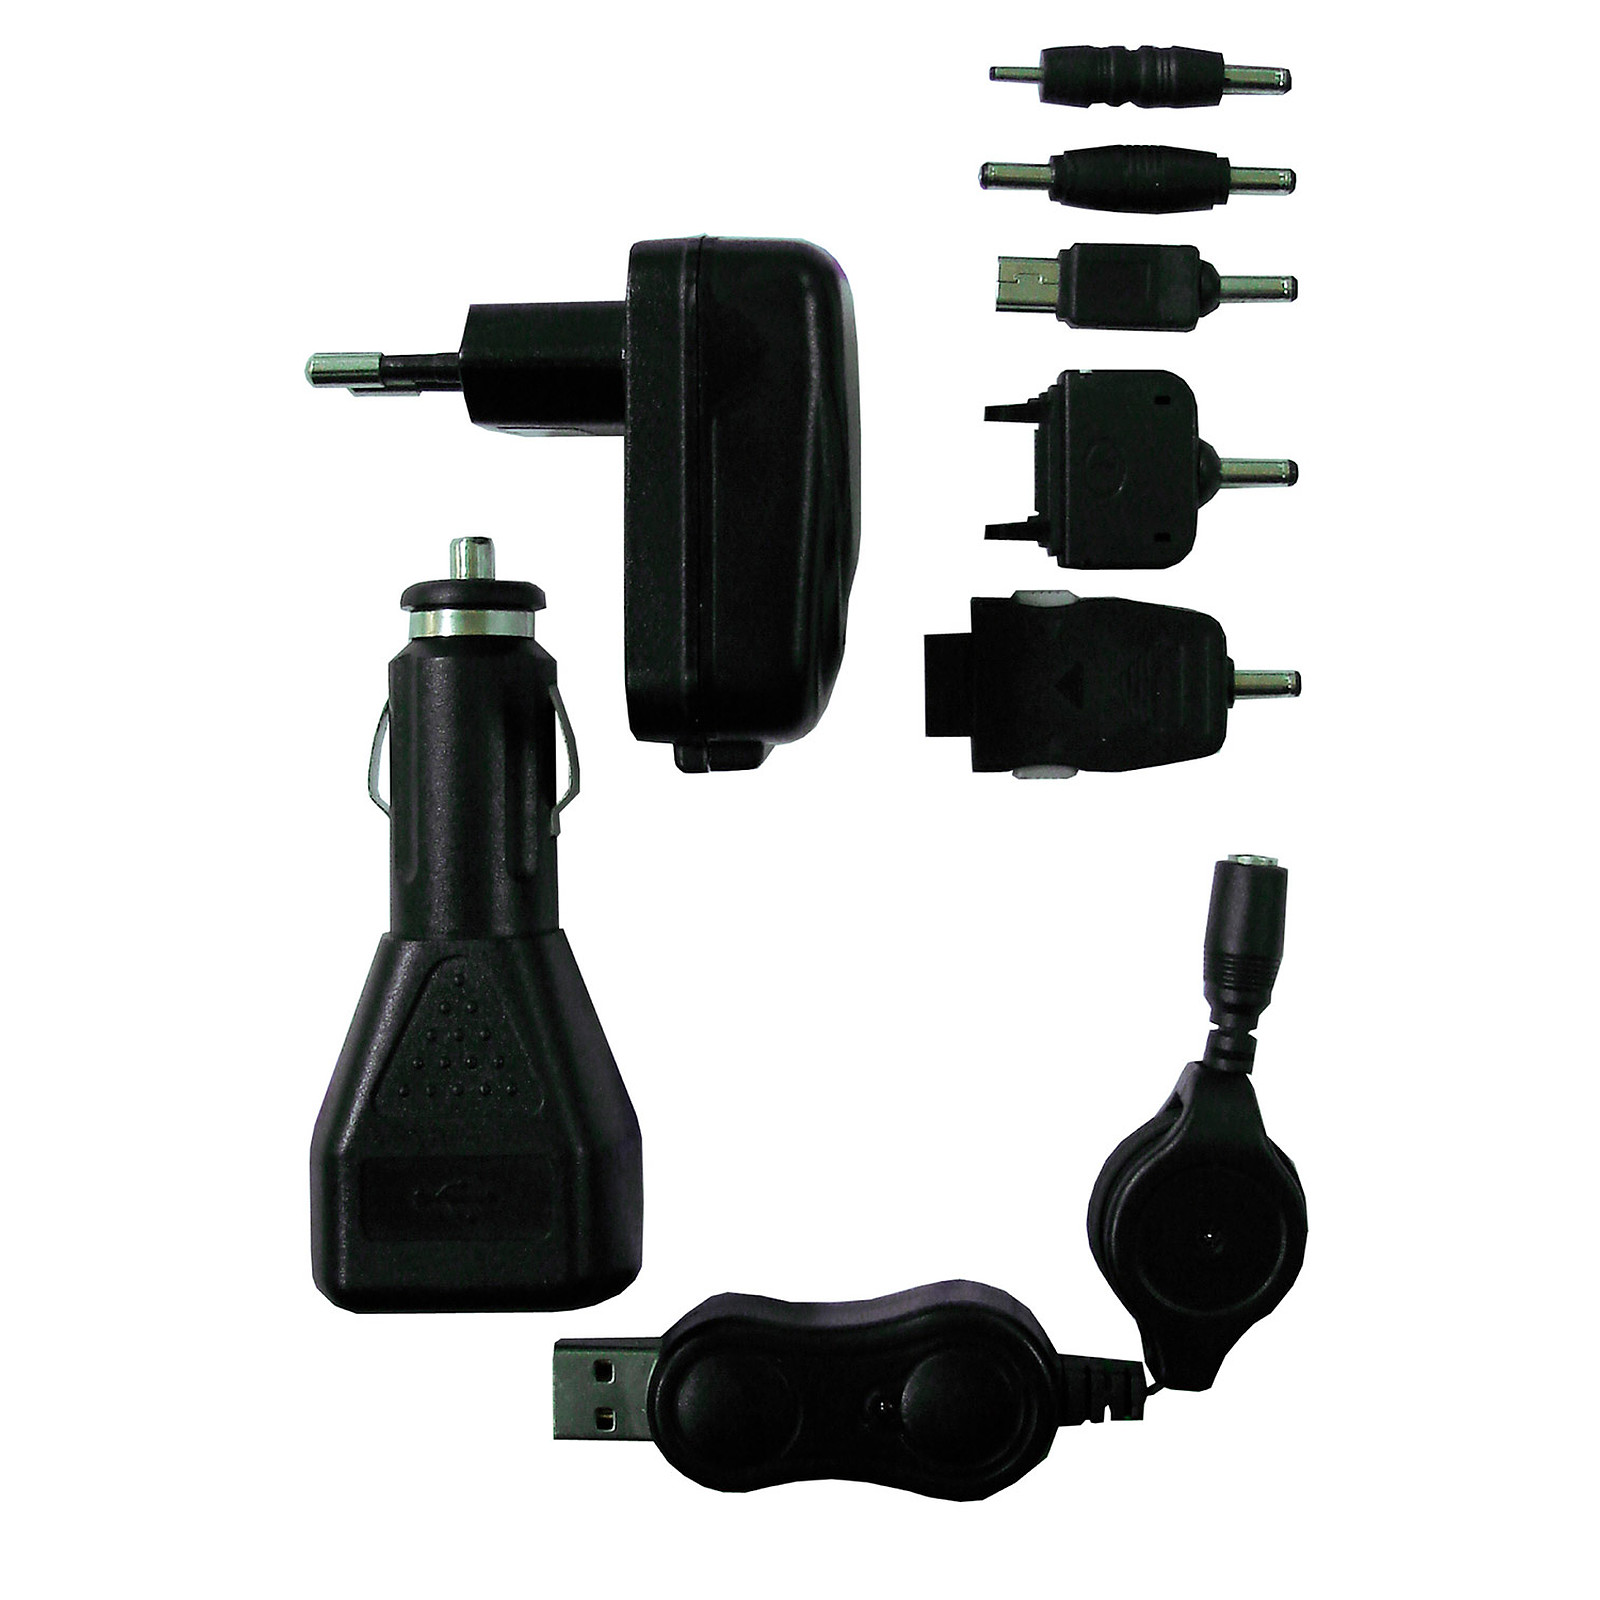 Zenitech-Kit chargeur USB compose de: 1 adaptateur voiture en USB + 1 cordon retractable USB + 1 chargeur mural USB + 5 connecteurs - Chargeur telephone Zenitech